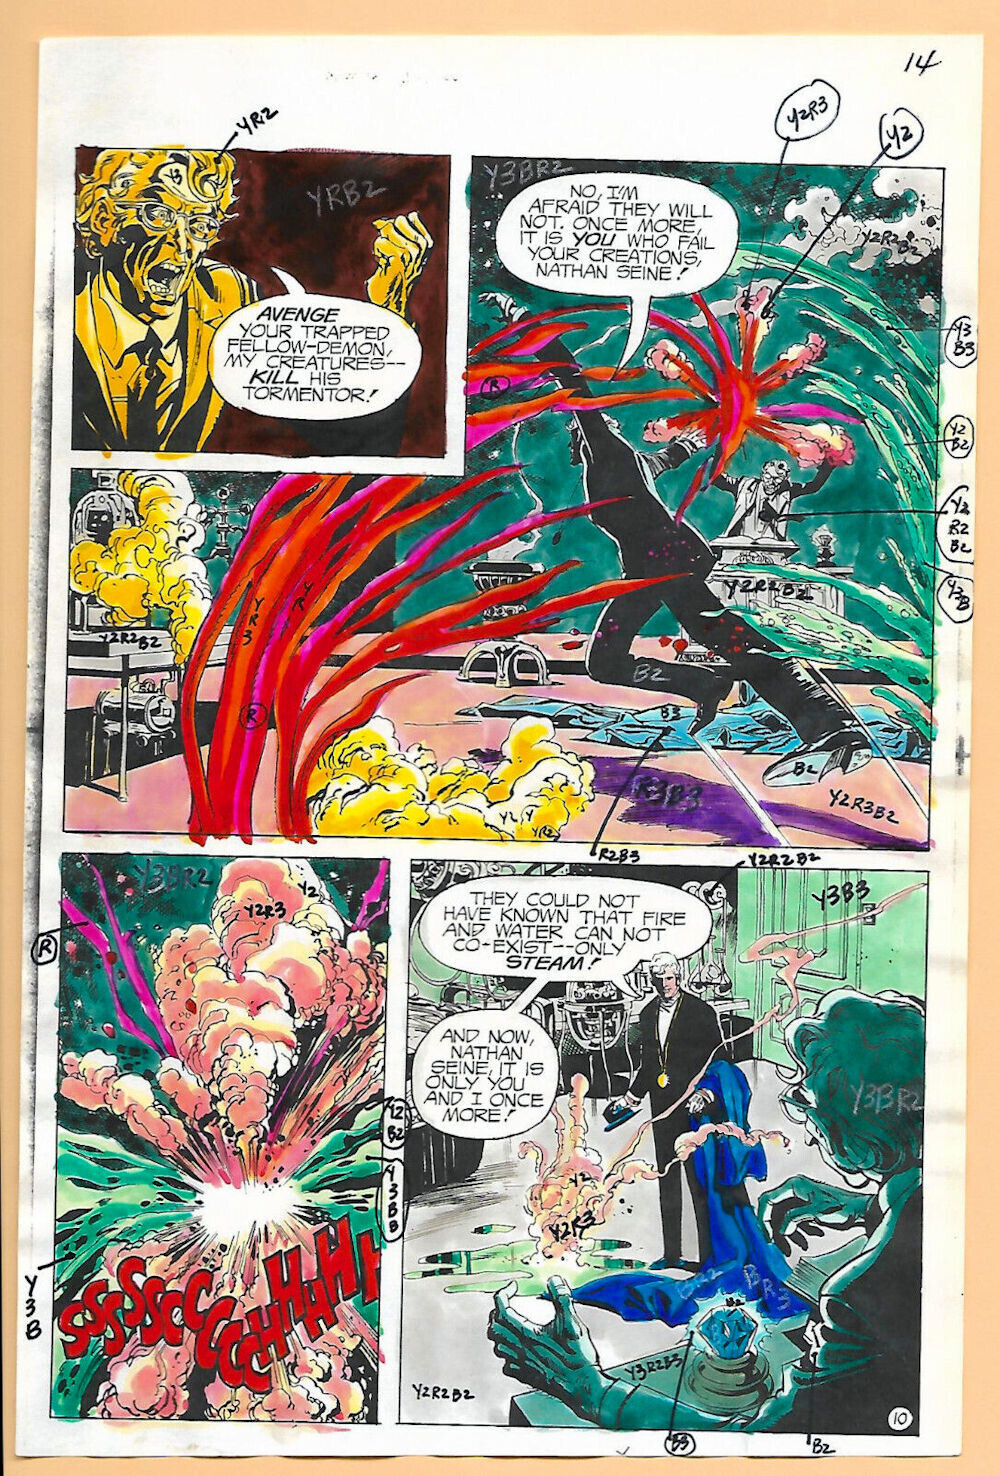 1975 Original Phantom Stranger 38 page 14 DC comic book color guide artwork: JLA